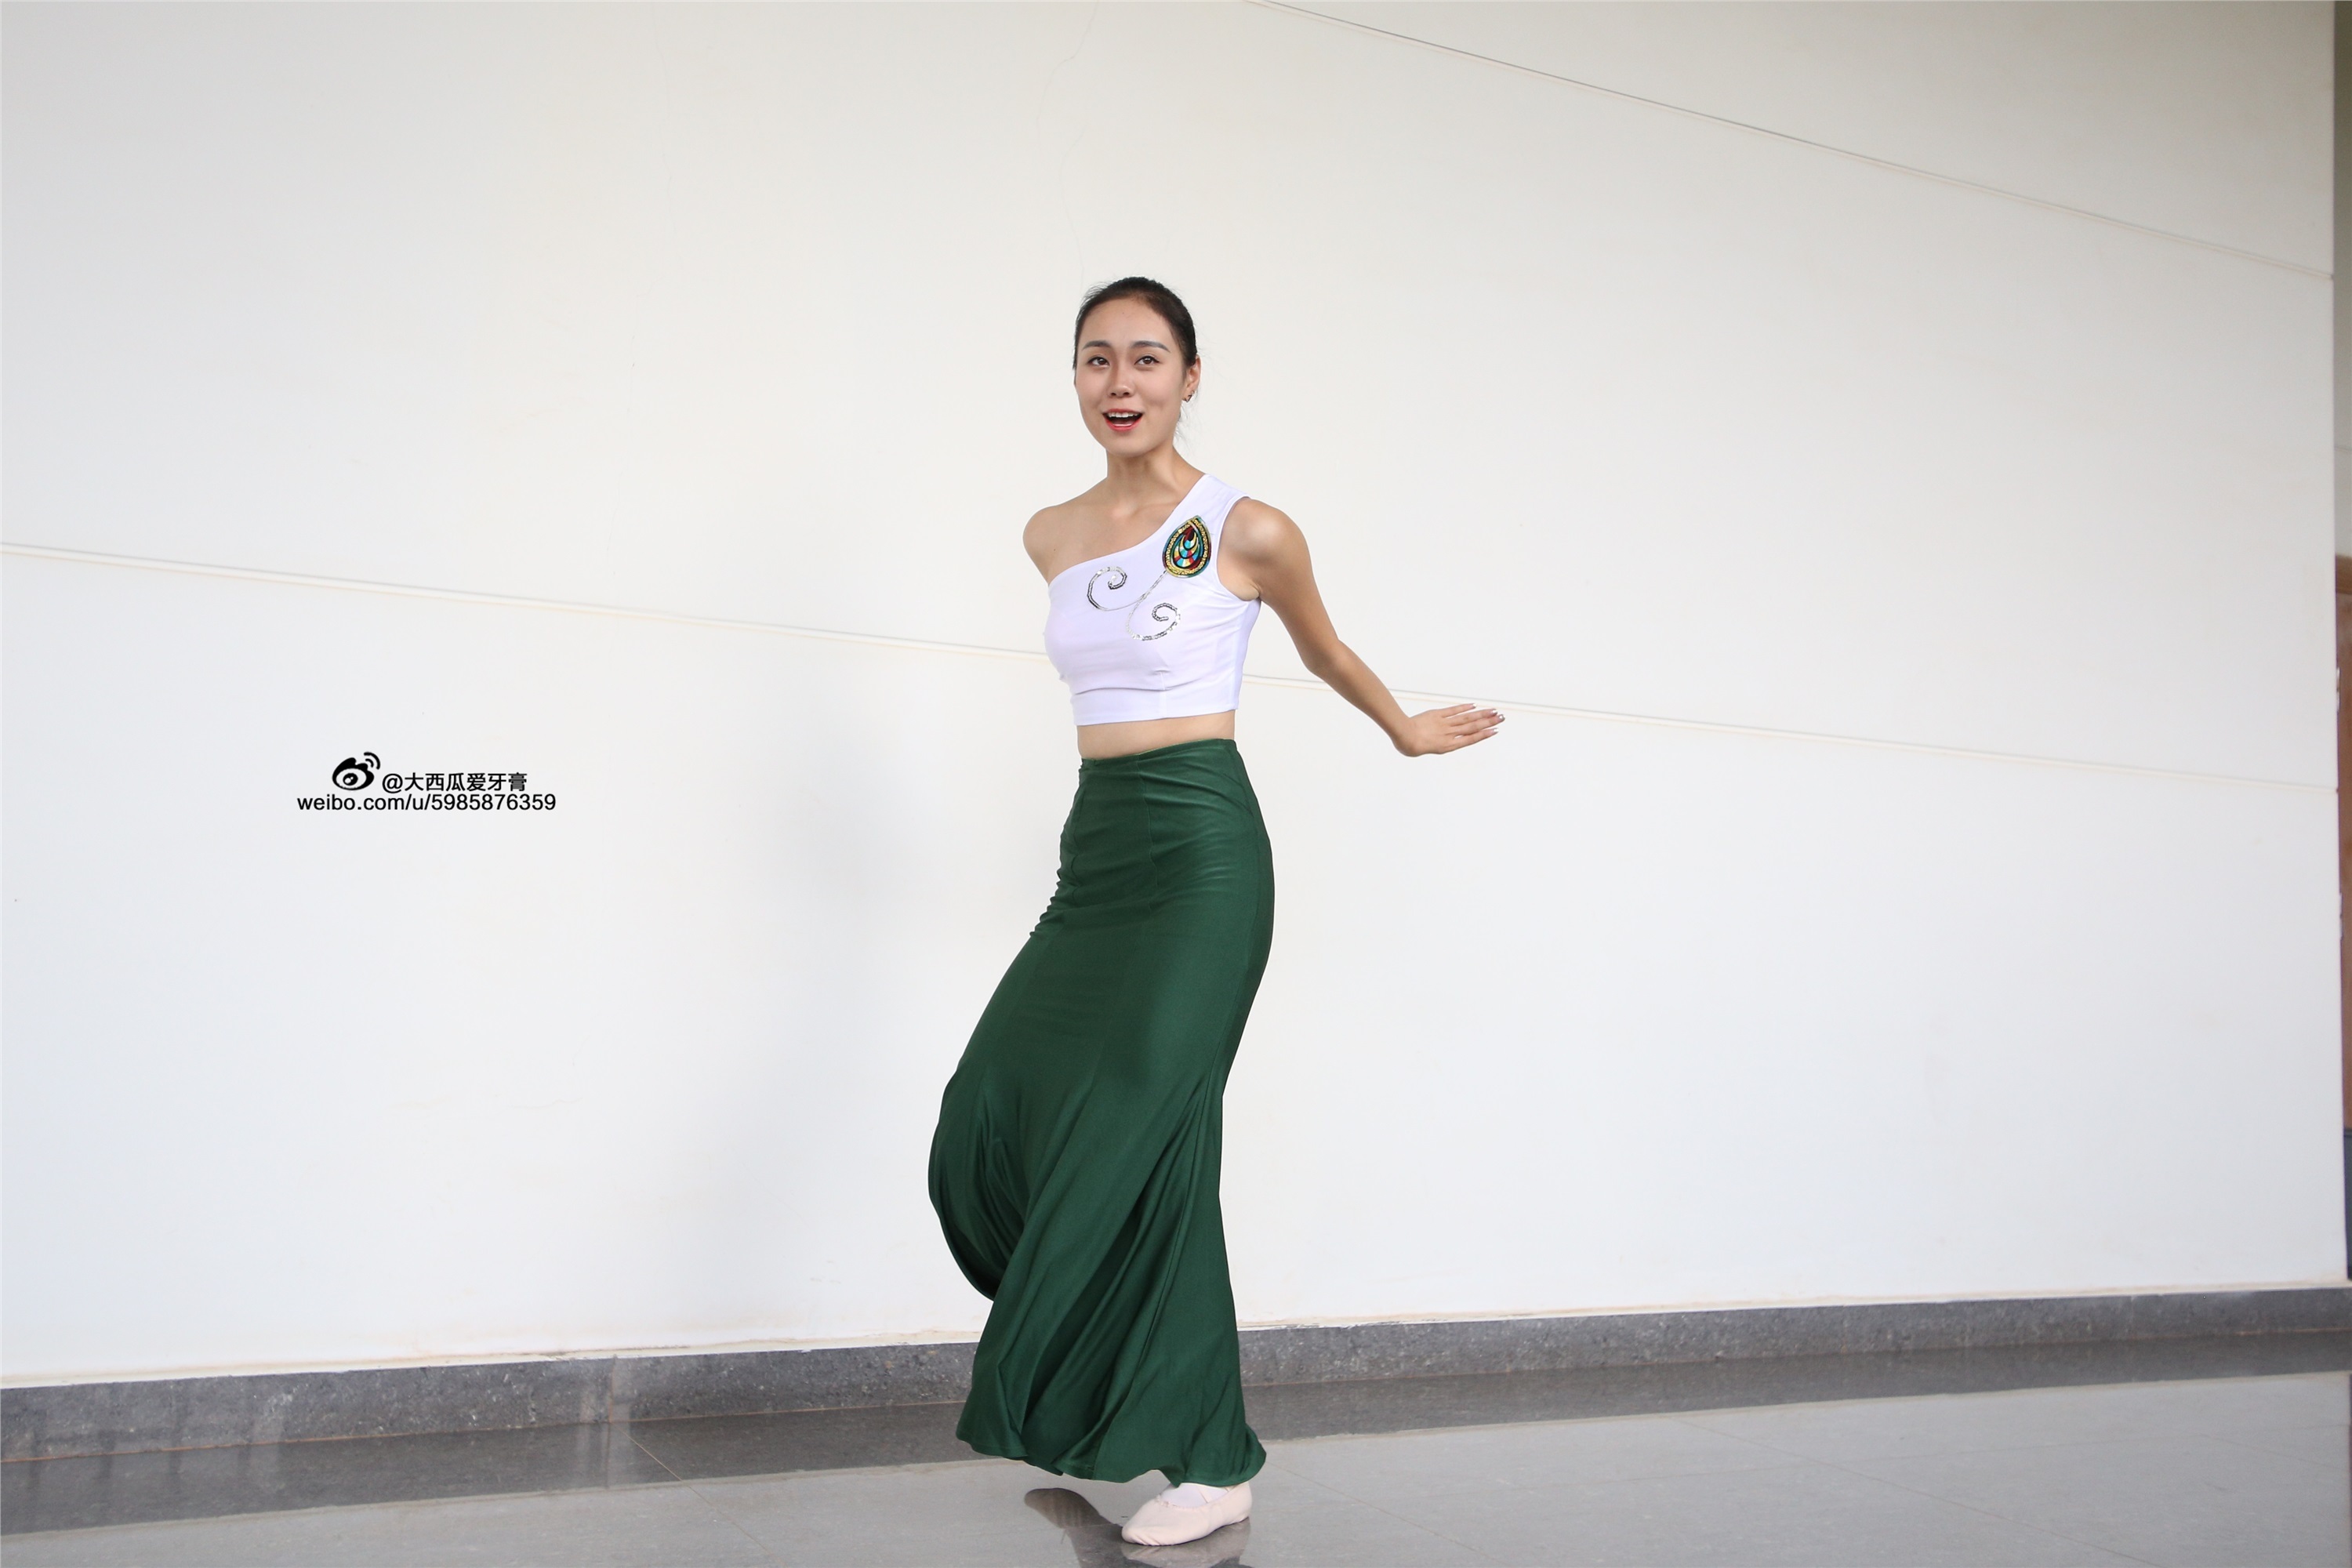 W006 dancer 1 - Wenjun green skirt 2